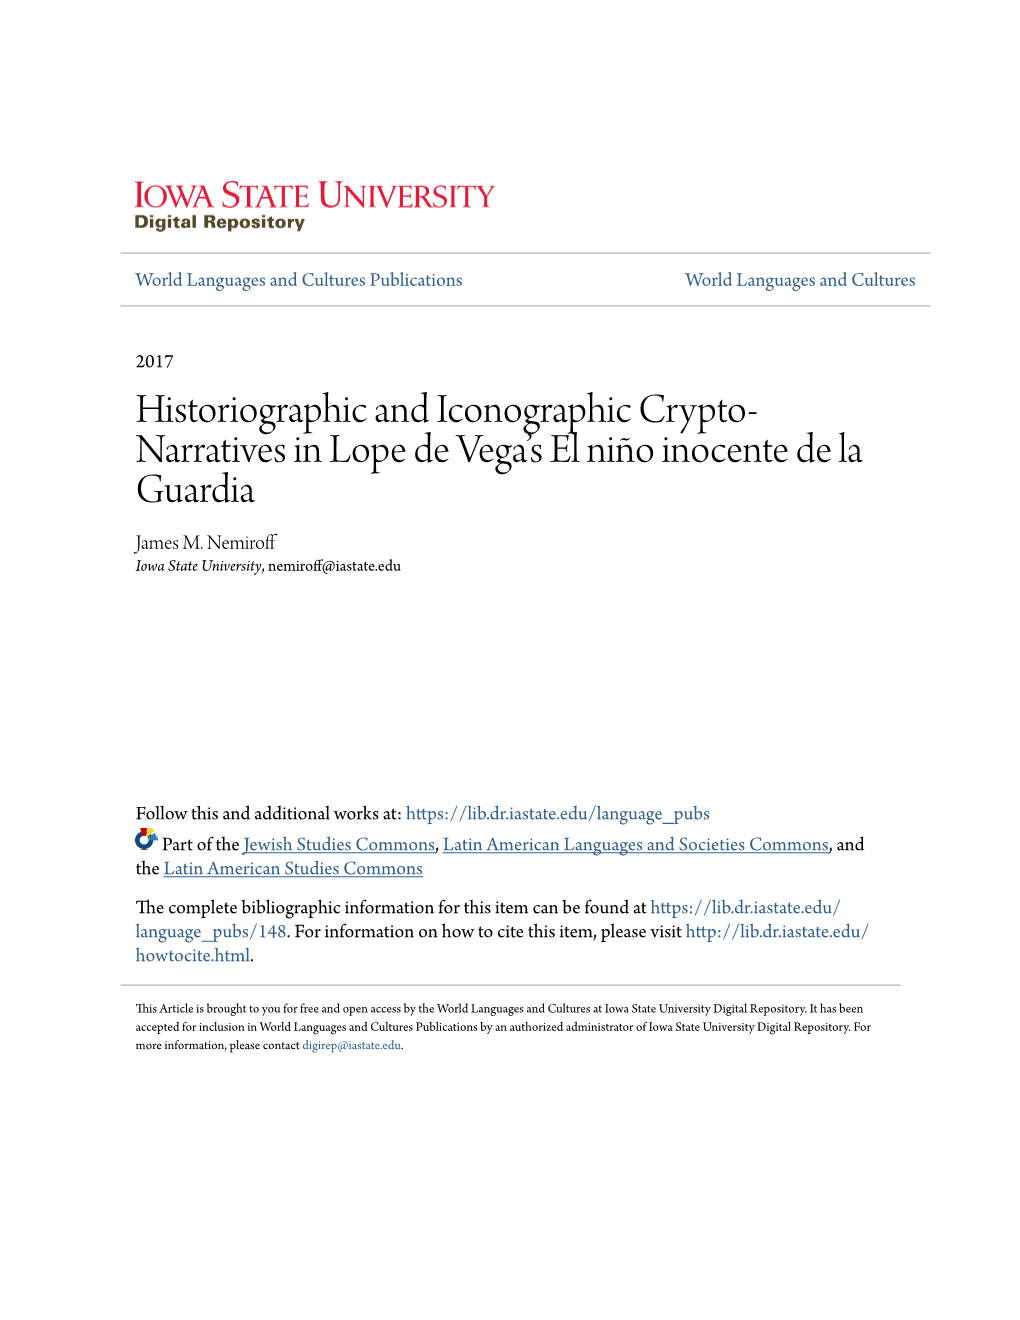 Historiographic and Iconographic Crypto-Narratives in Lope De Vega's El Niño Inocente De La Guardia